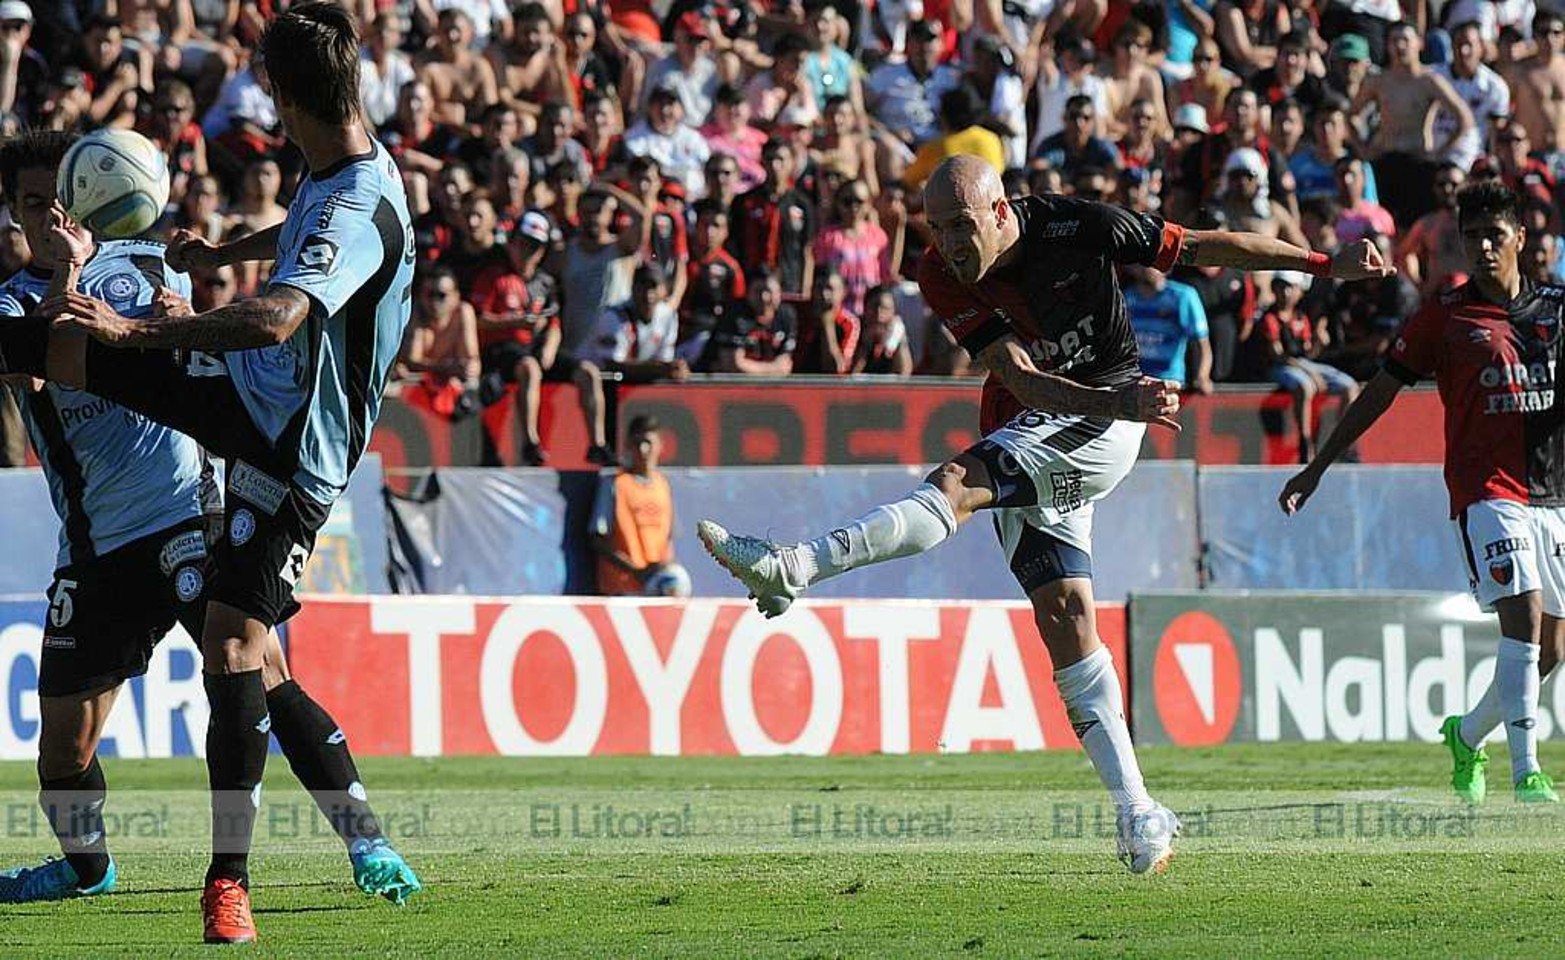 Colón y Belgrano dispurtaron el partido de ida de la Pre Liguilla Sudamericana. El próximo sábado se juega en Córdoba